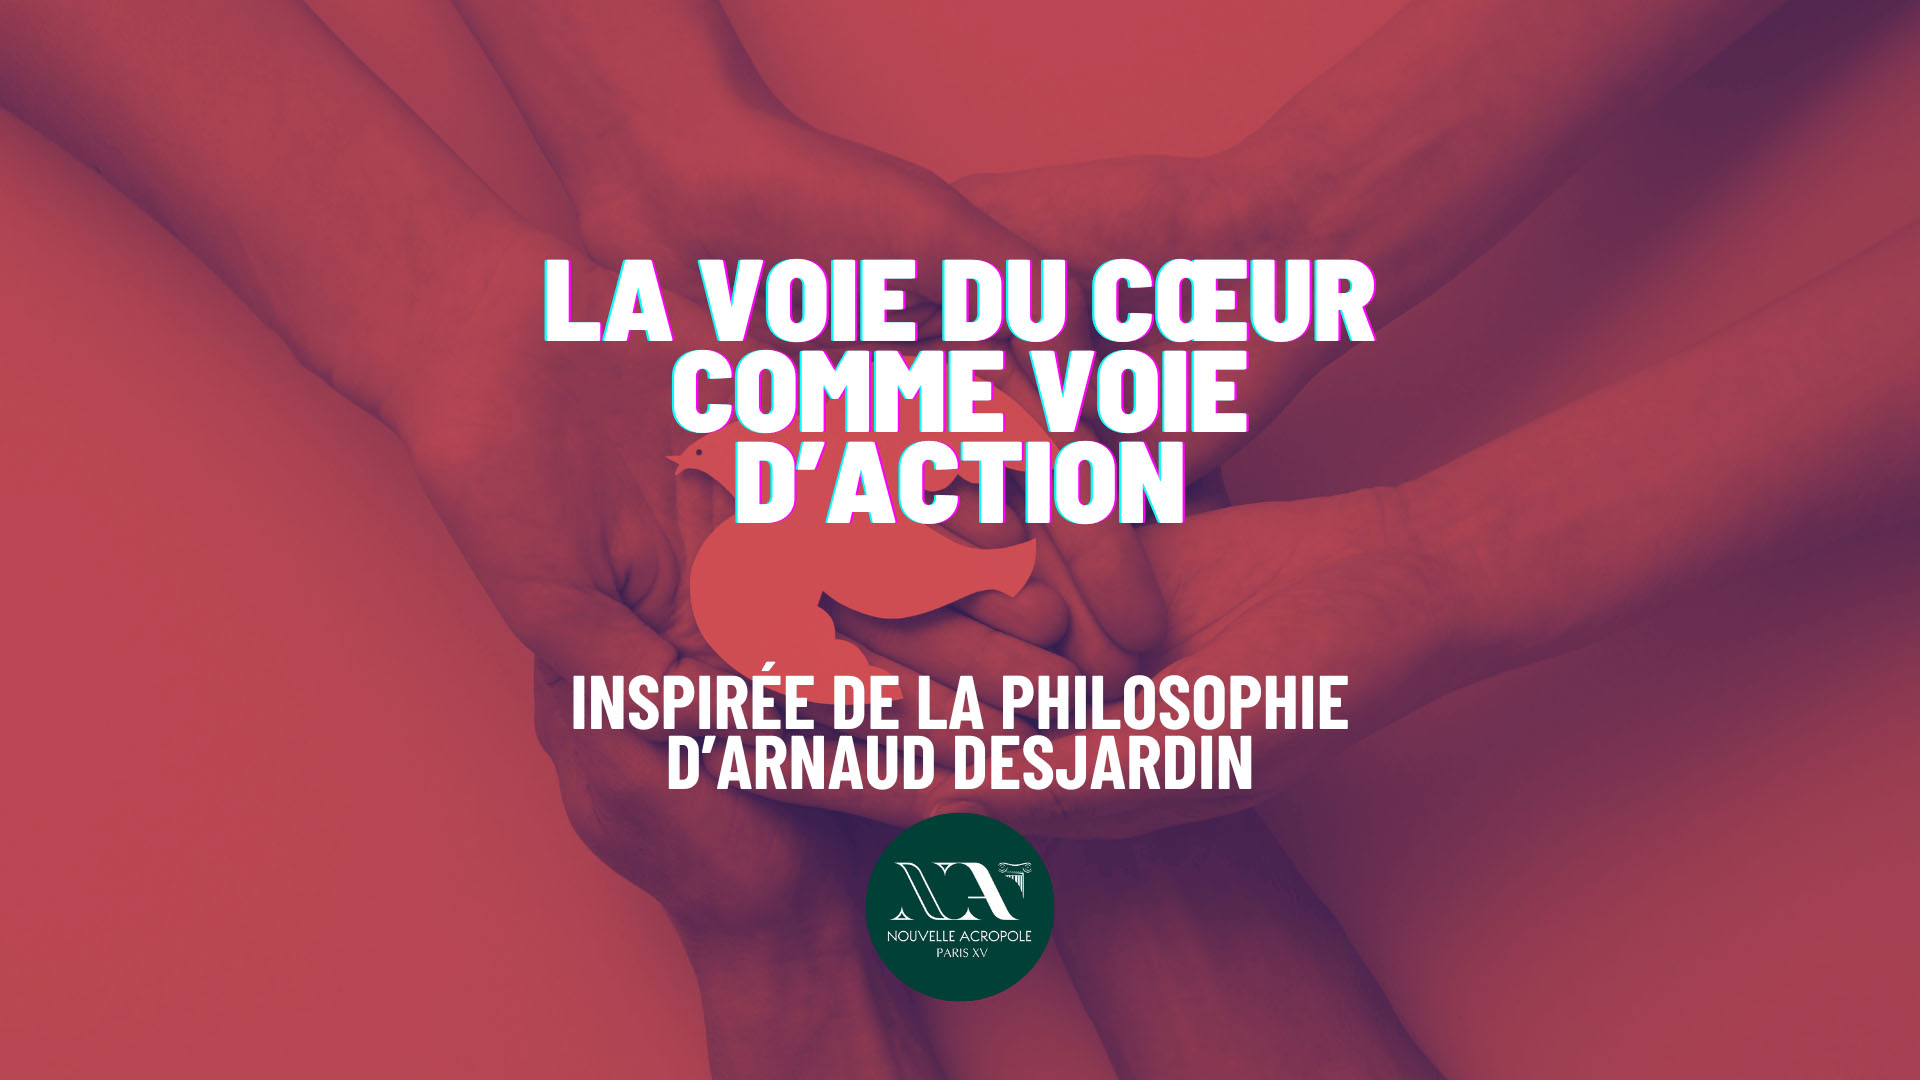 La Voie du Cœur comme voie d’action – inspirée de la philosophie d’Arnaud Desjardin. 